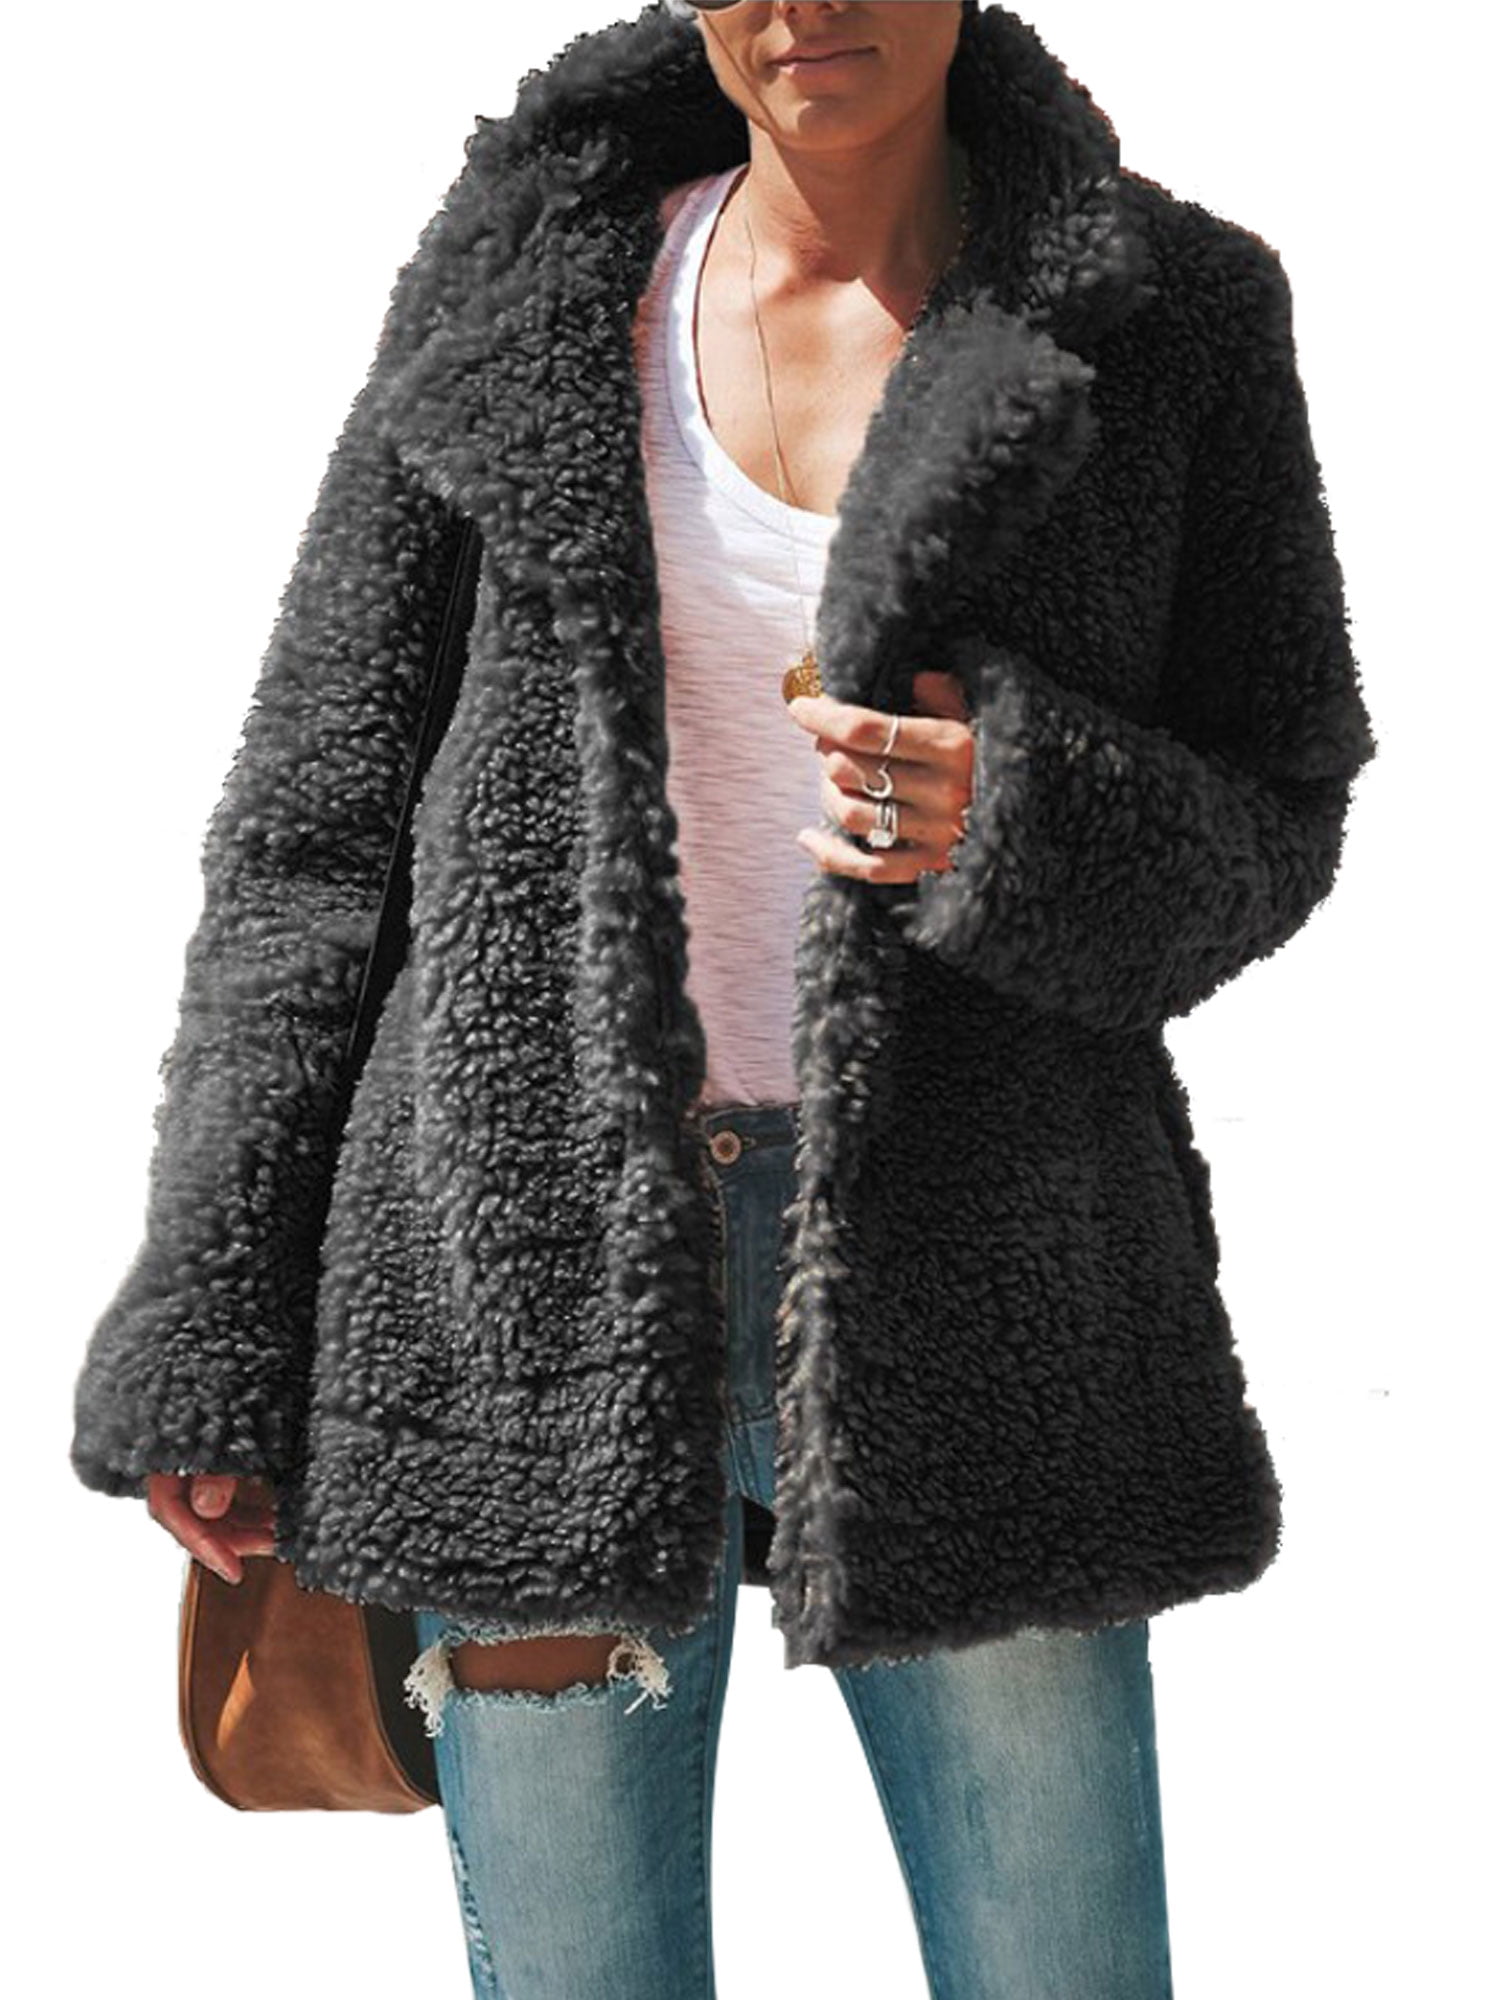 Womens Fuzzy Fleece Cardigan Coat Open Front Faux Fur Jacket for Party Wedding Warm Winter Coat Shaggy Outwear 